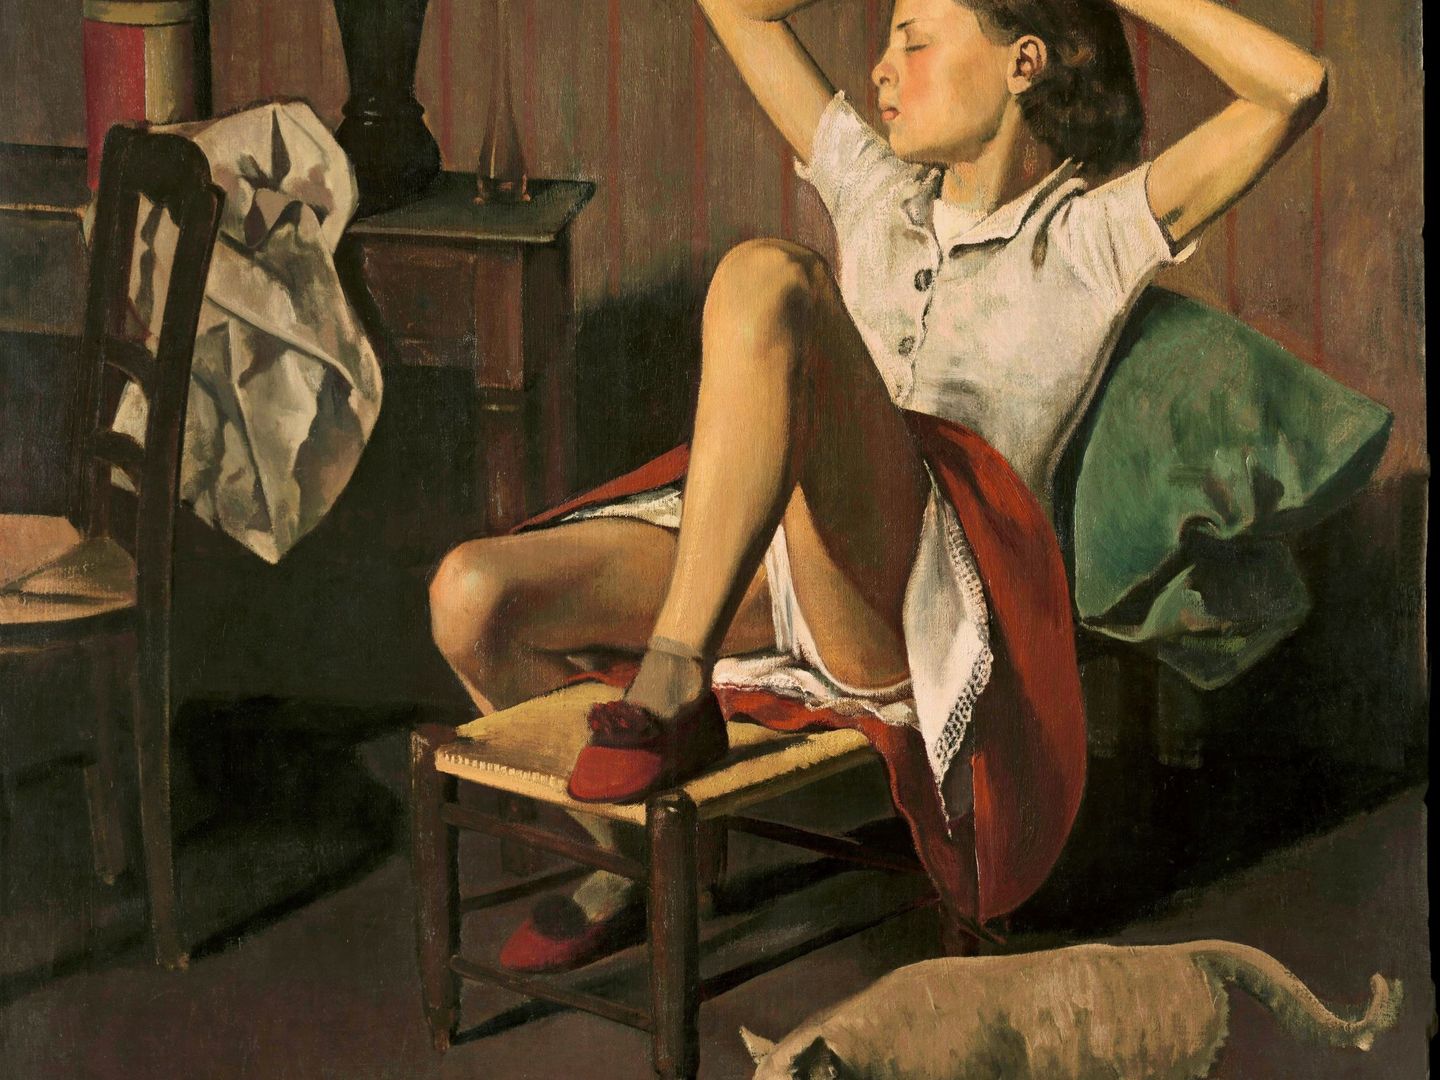 Fotografía facilitada por el Museo Thyssen del polémico óleo 'Teresa soñando'(1938), de Balthus. (EFE)